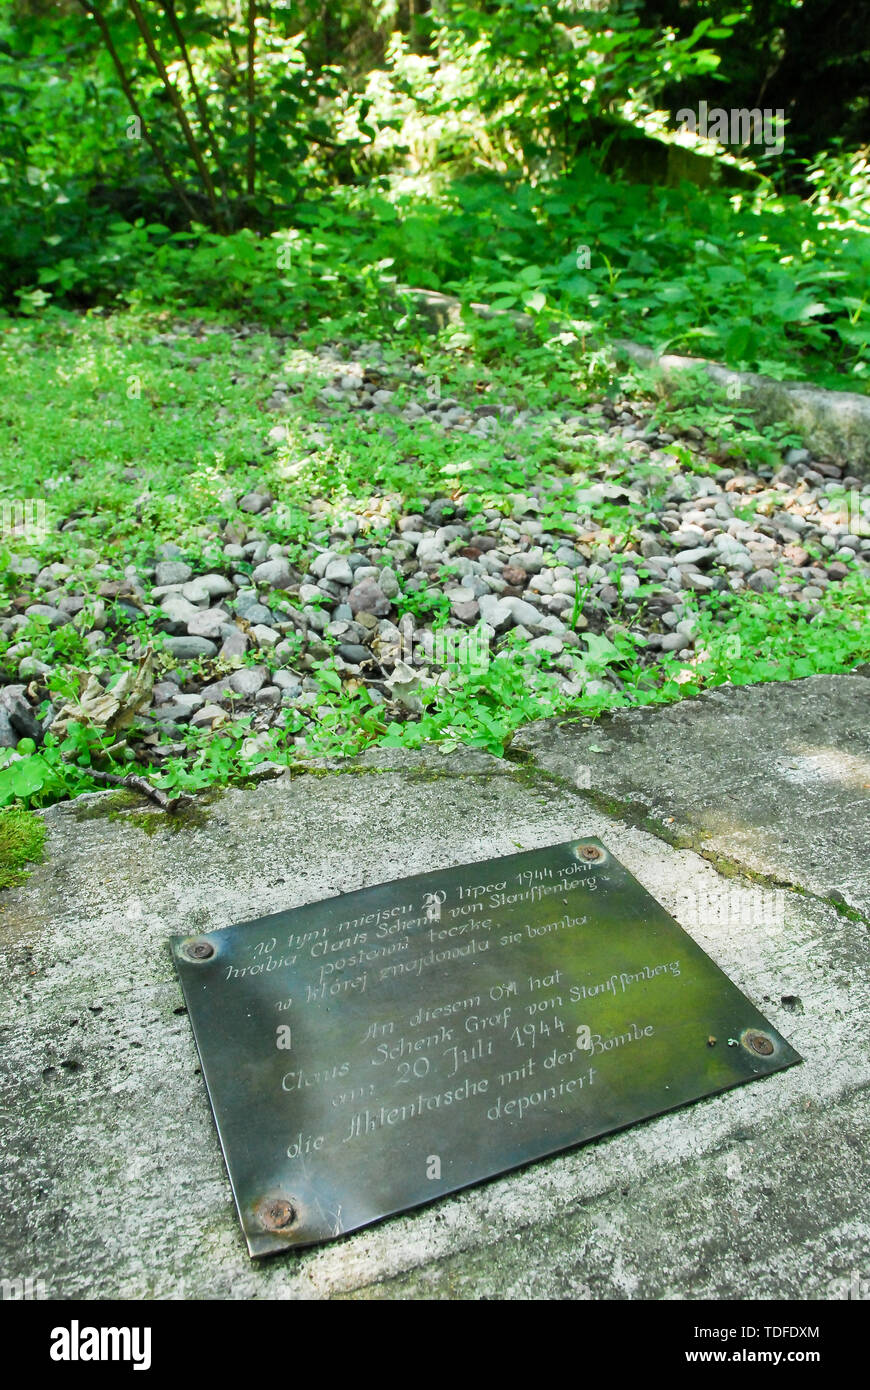 Lapide commemorativa del 20 luglio trama su un sito della briefing room, dove Claus von Stauffenberg impostare una bomba, in Wolfsschanze (Wolf's Lair) in Gierloz, Polonia. Foto Stock